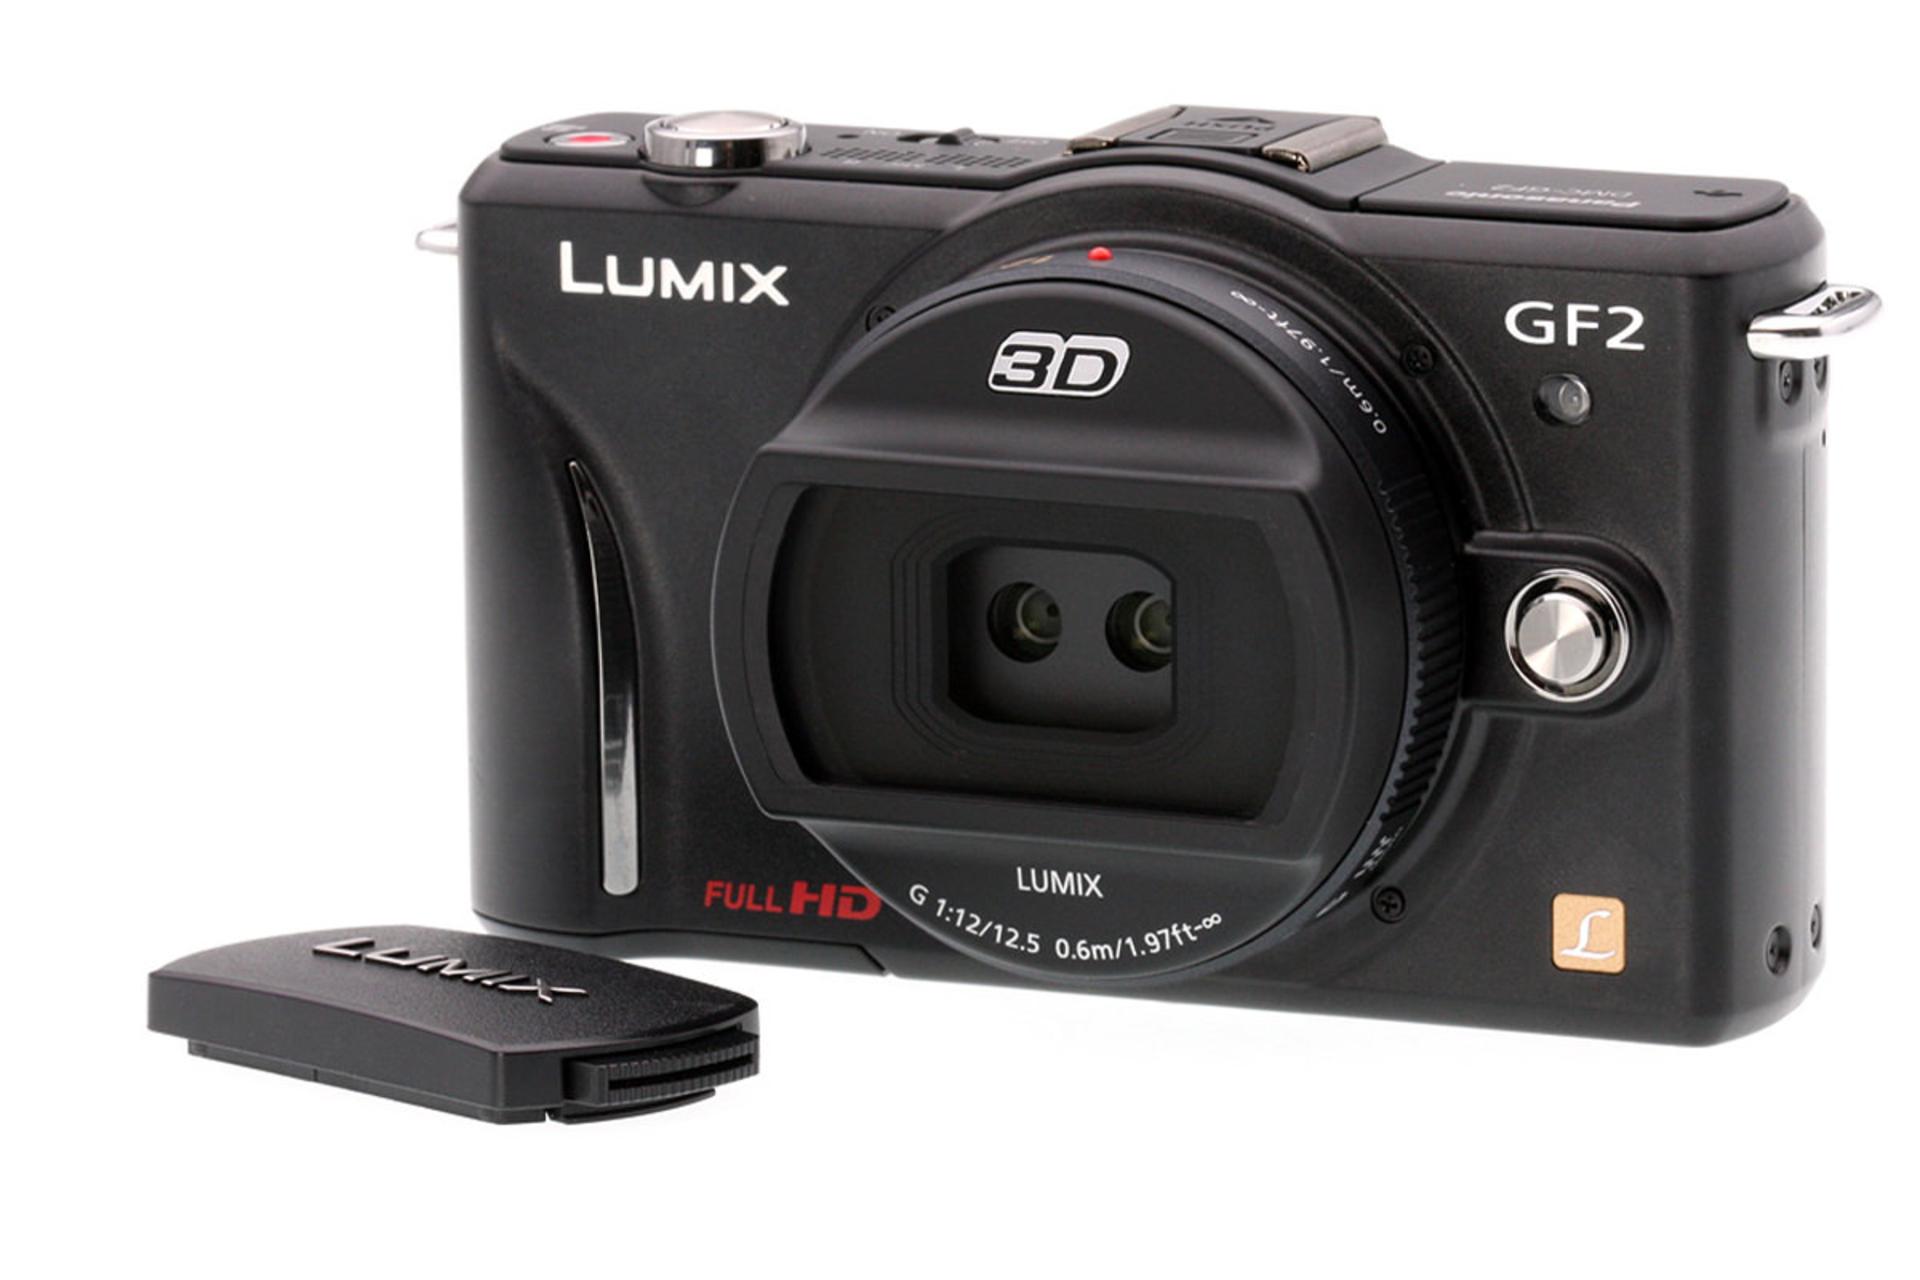  لنز پاناسونیک Lumix G 12.5mm / F12 نصب شده روی دوربین